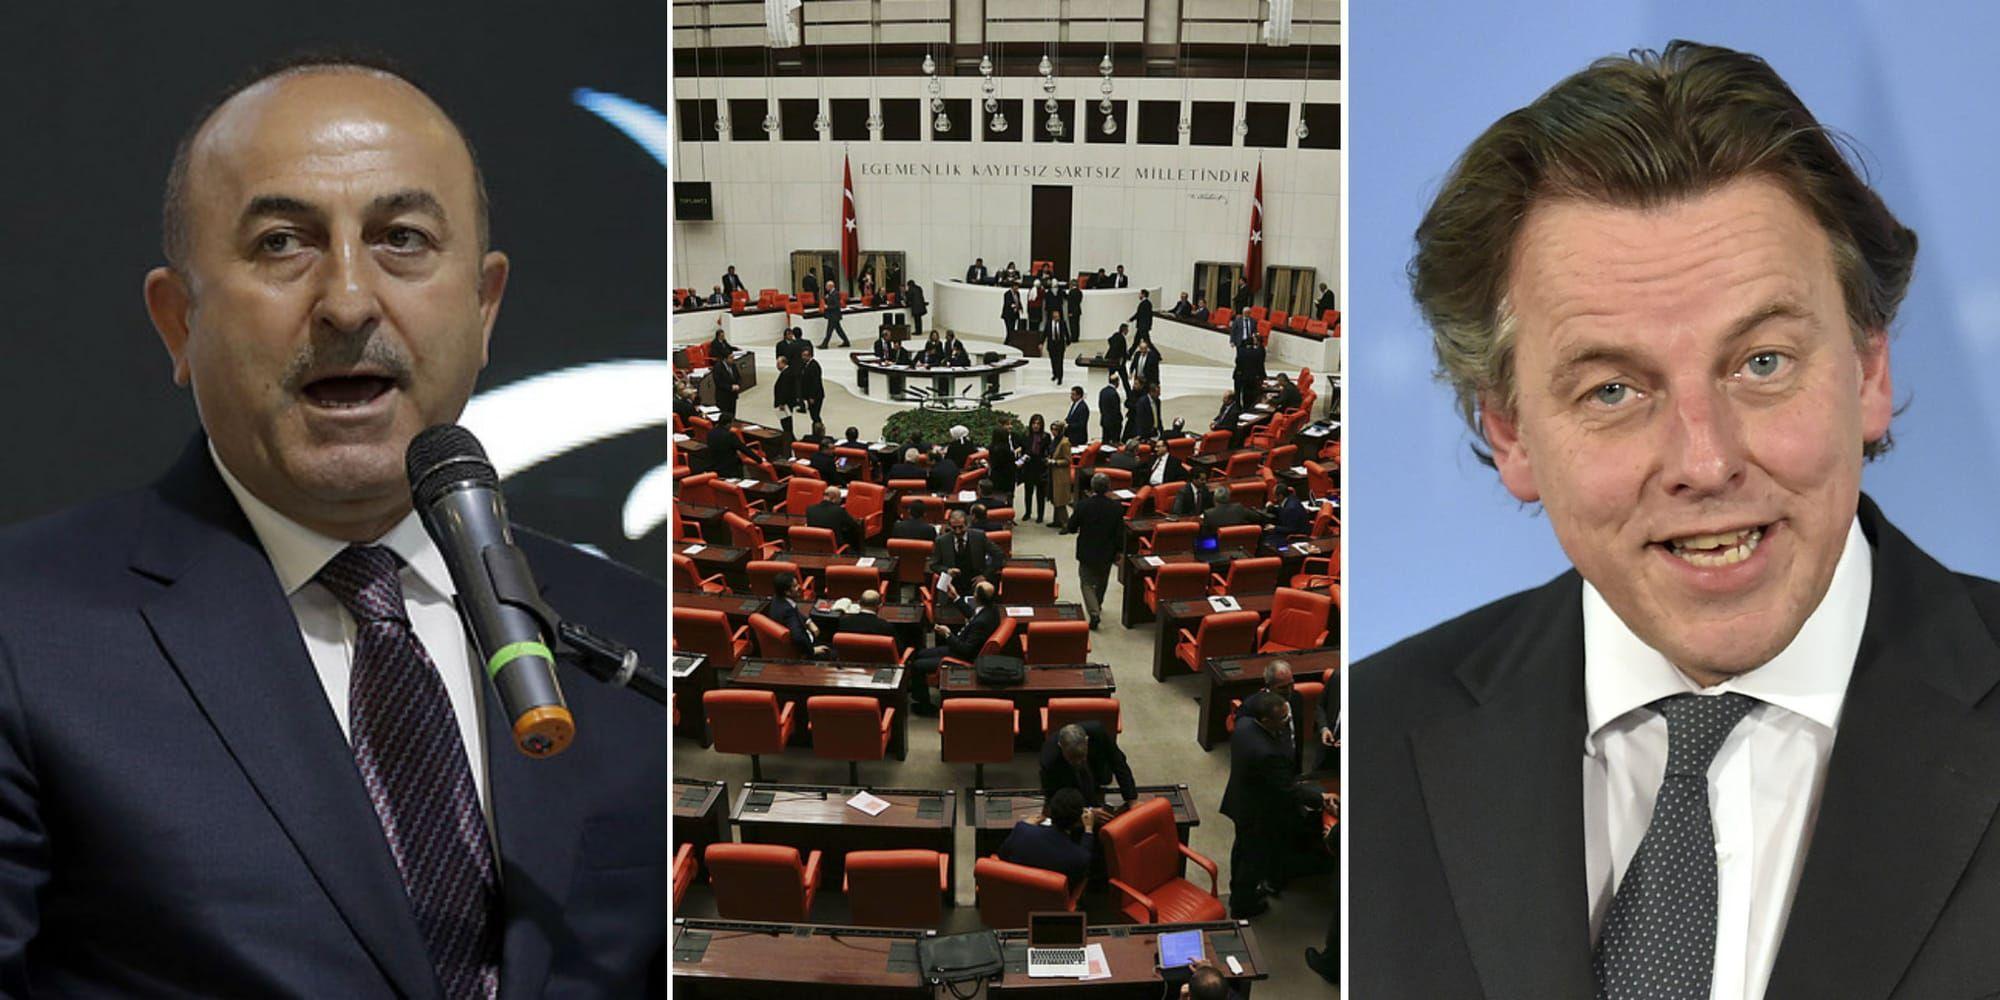 Turkiets utrikesminister Mevlüt Çavusoglus och Nederländernas utrikesminister Bert Koenders i ordkrig. Bilder: TT